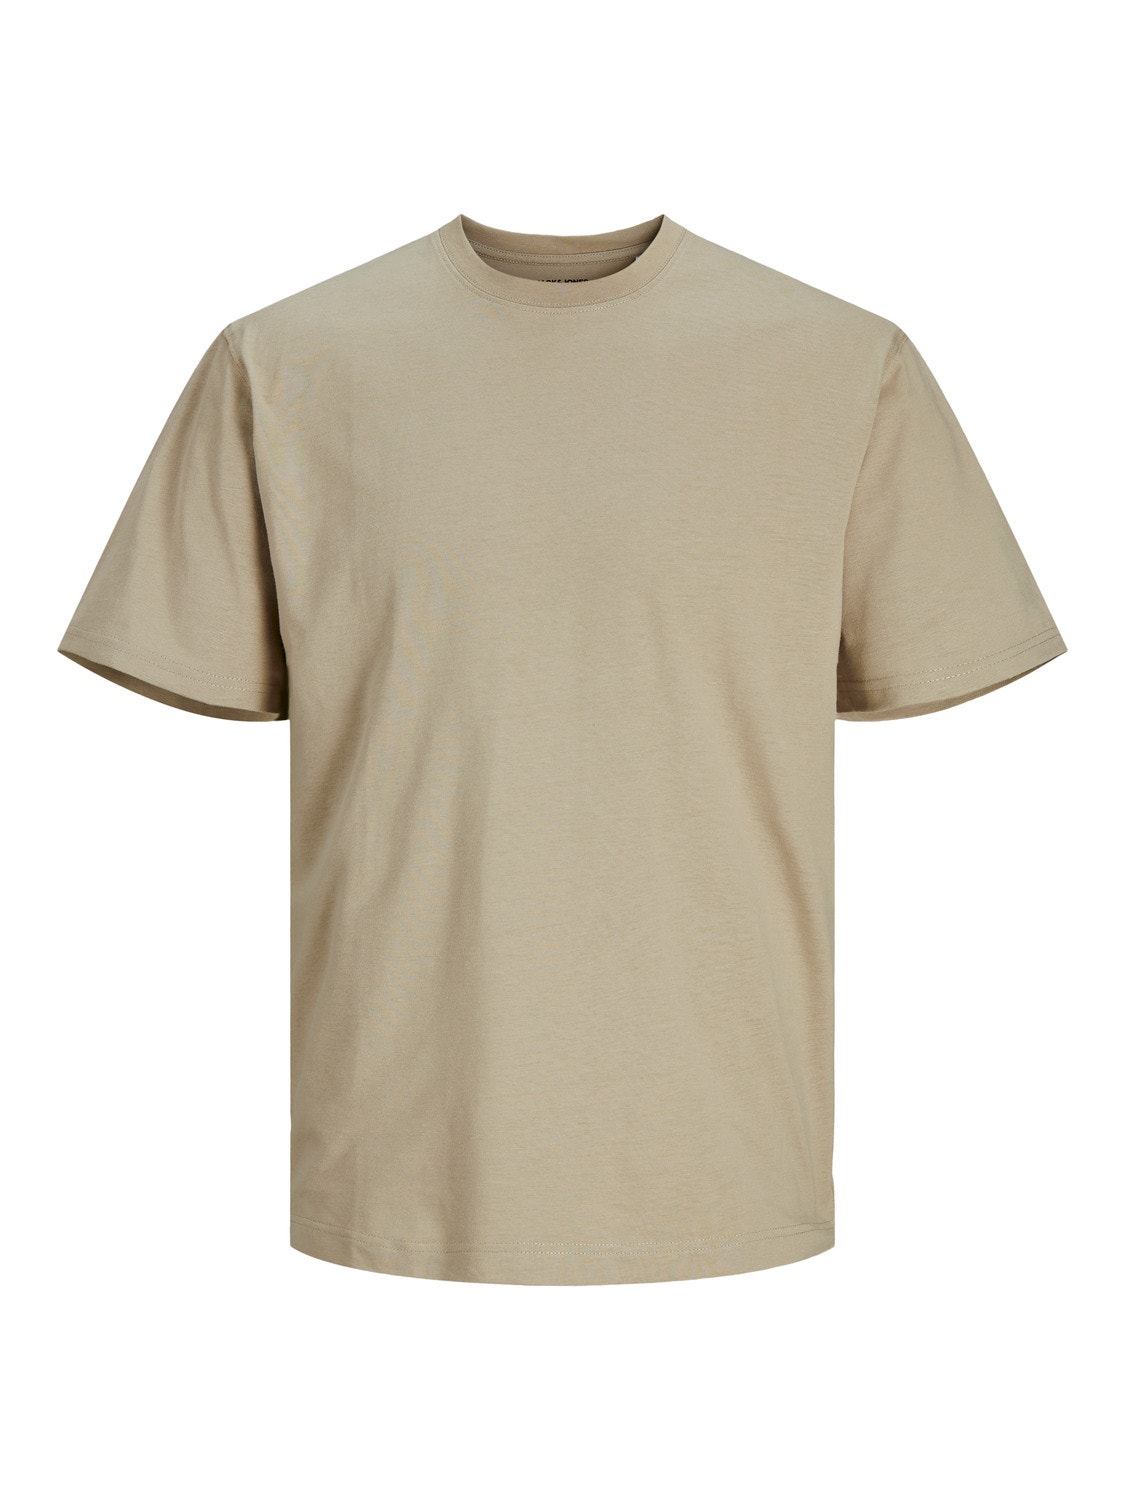 Plain Crew neck T-shirt | Beige | Jack & Jones®